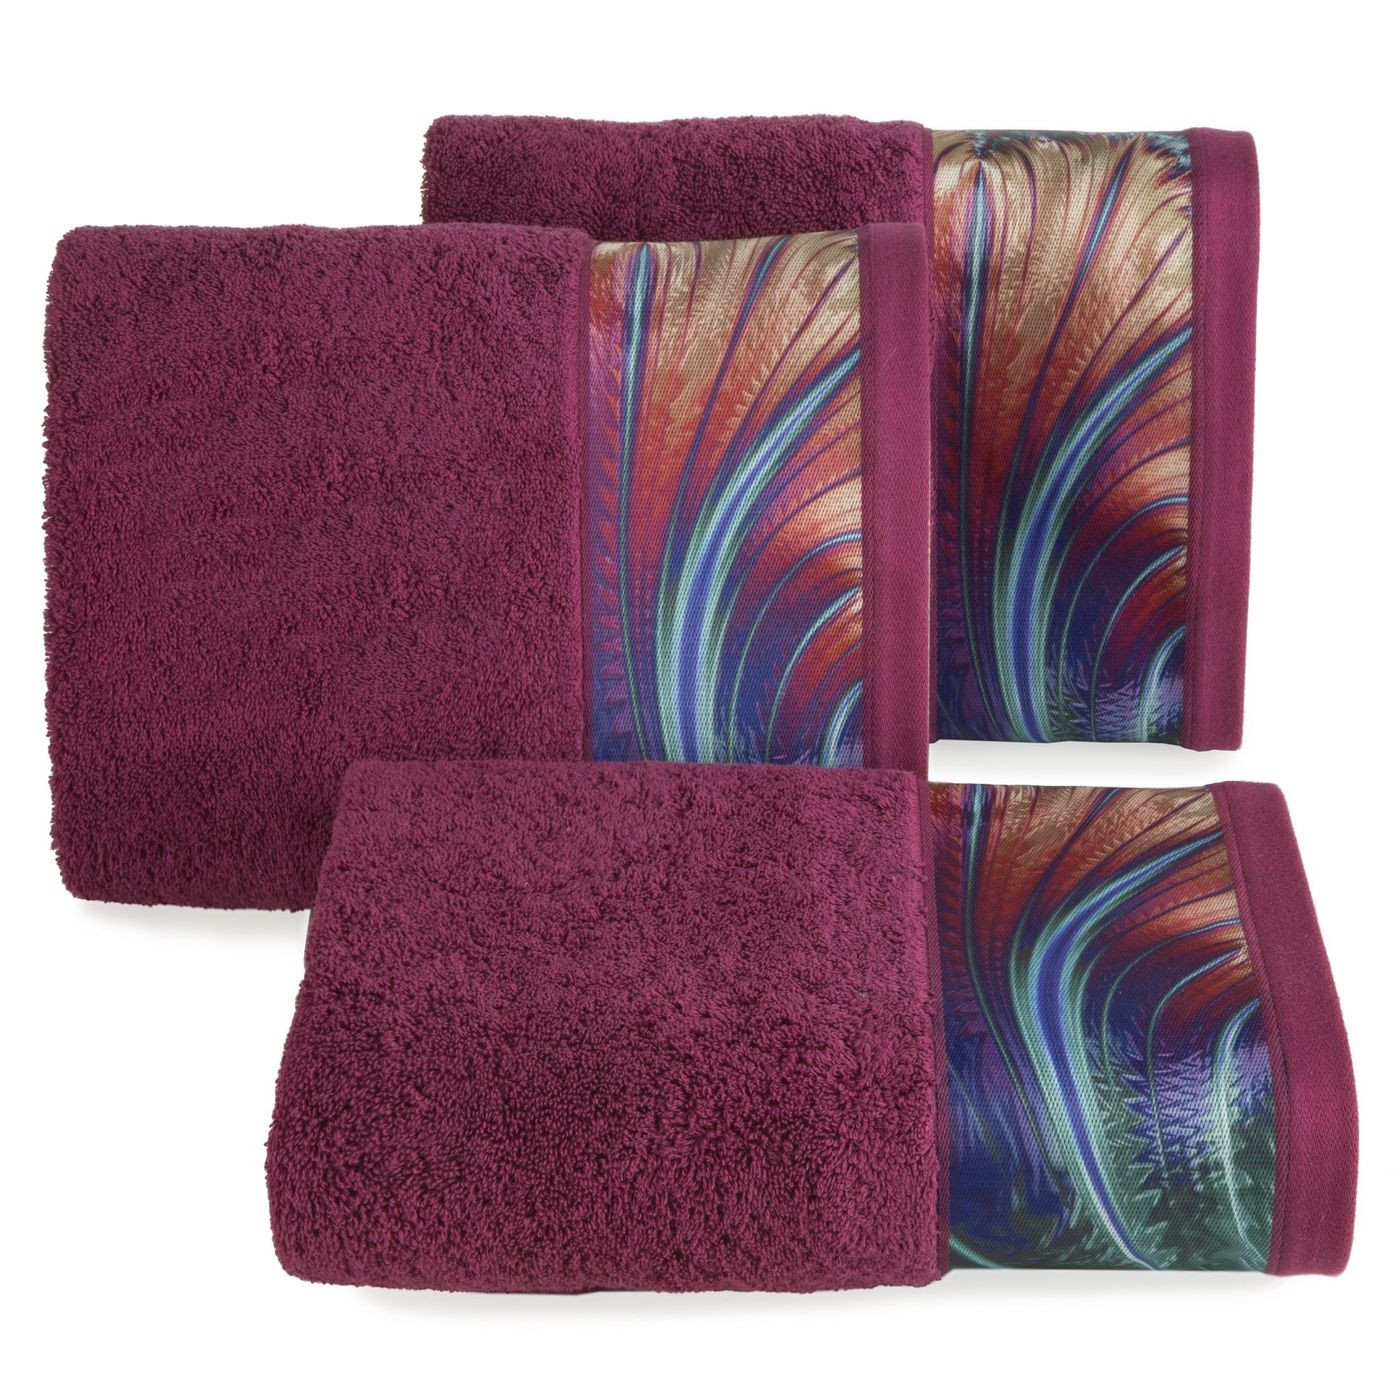 Amarantowy ręcznik kąpielowy - mój wybór Eva Minge - 70x140 cm